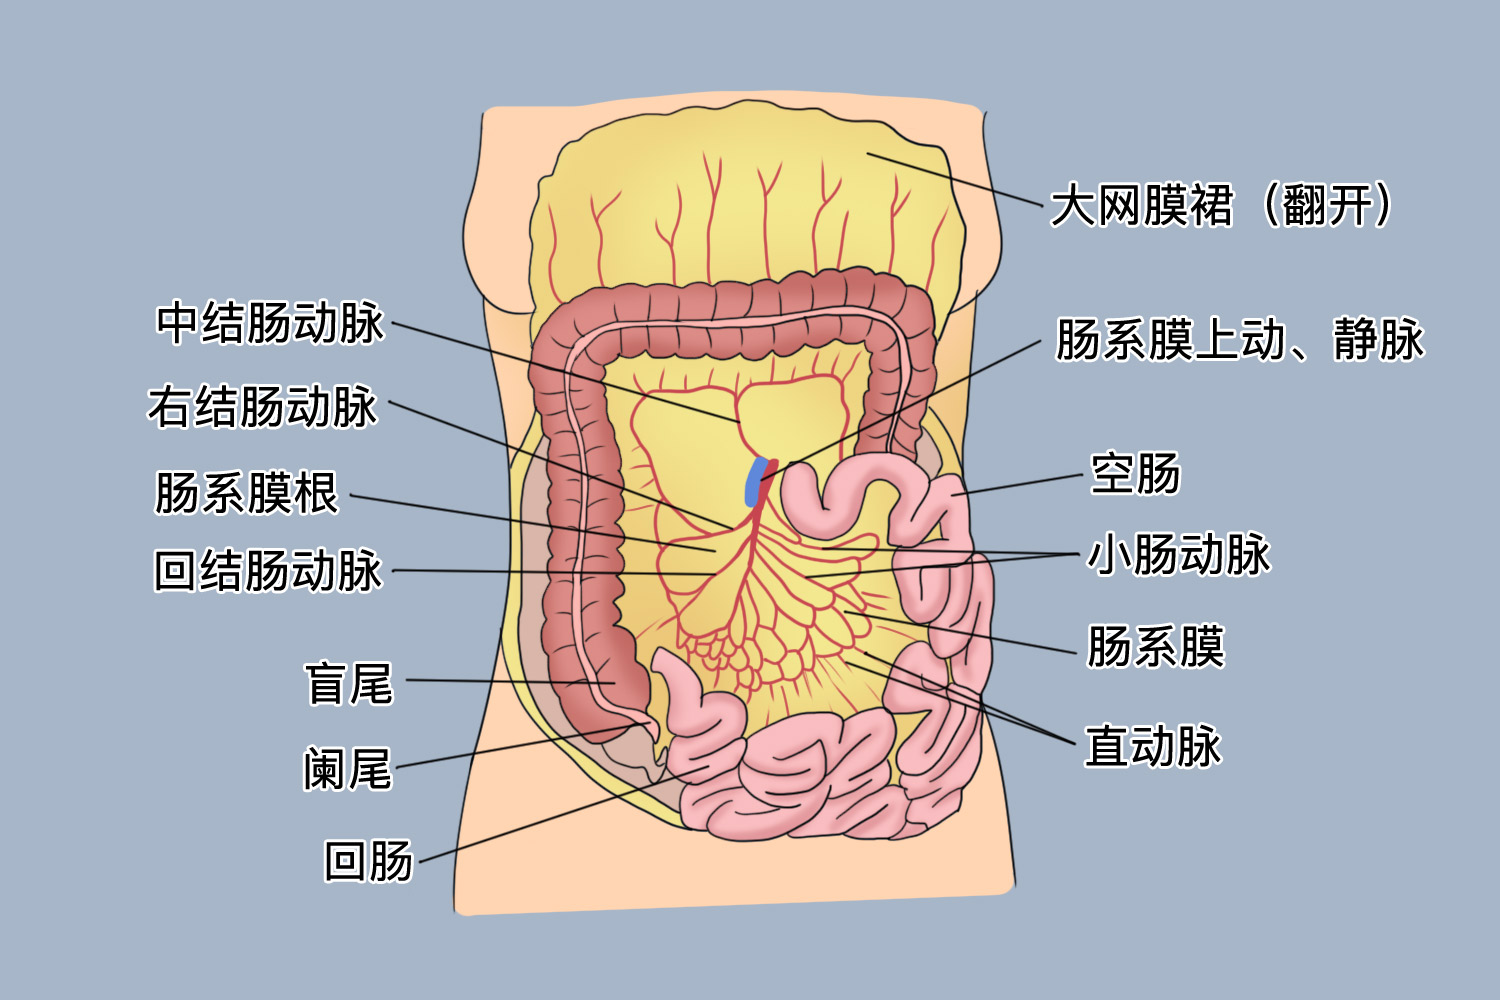 其间有分布到肠袢的血管,神经和淋巴,它们在小肠的系膜缘处进出肠壁